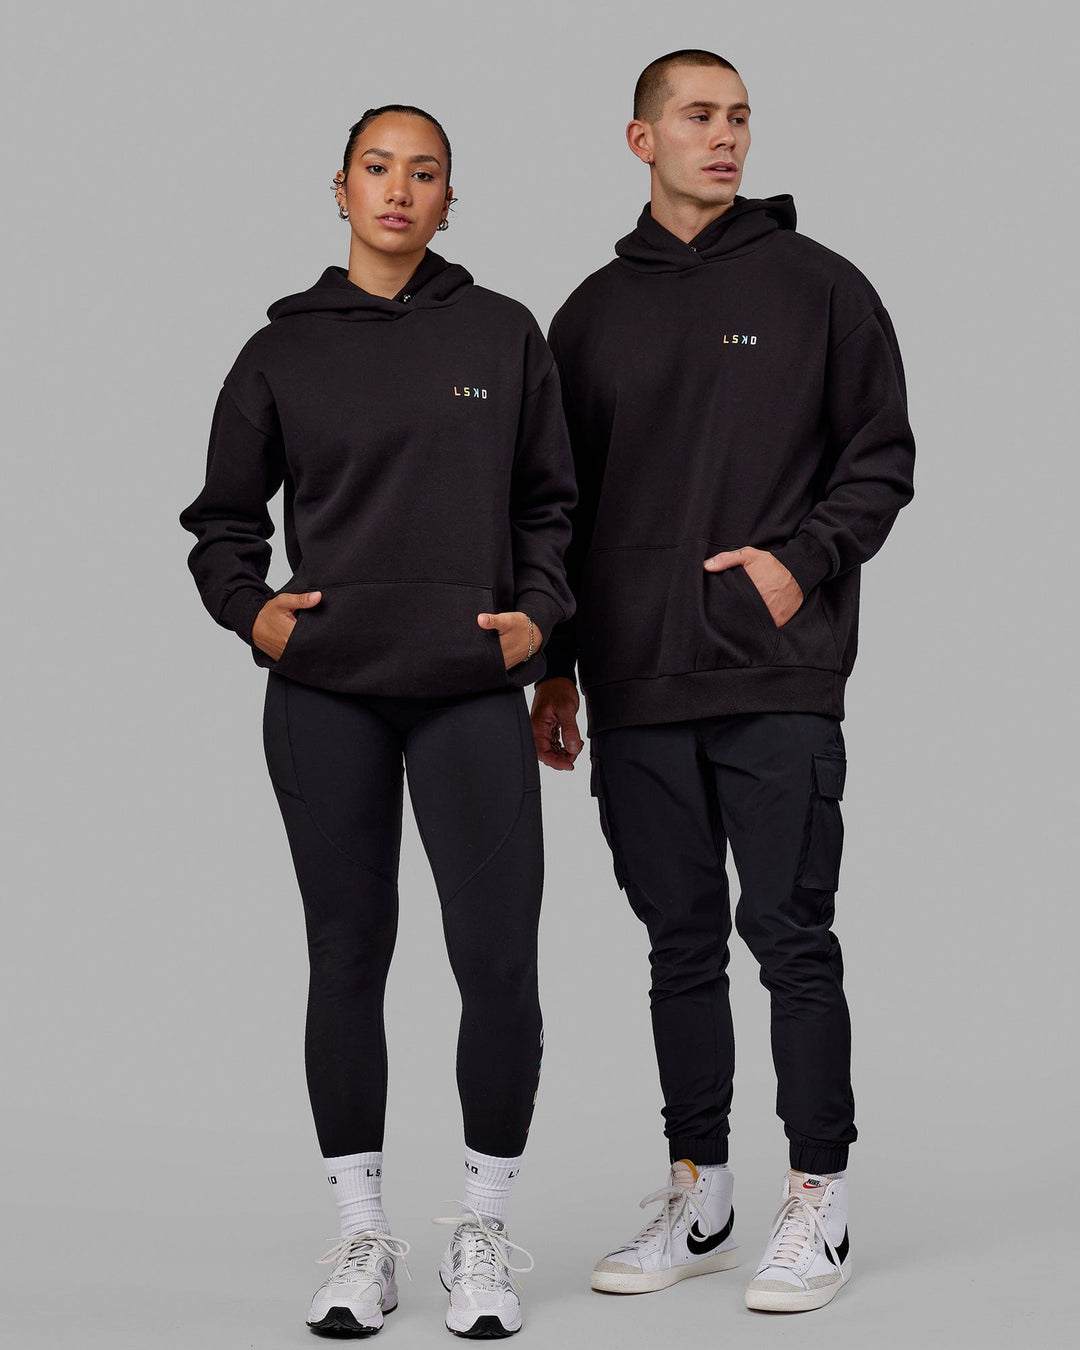 Duo wearing Unisex Amplify Hoodie Oversize - Pride-Black